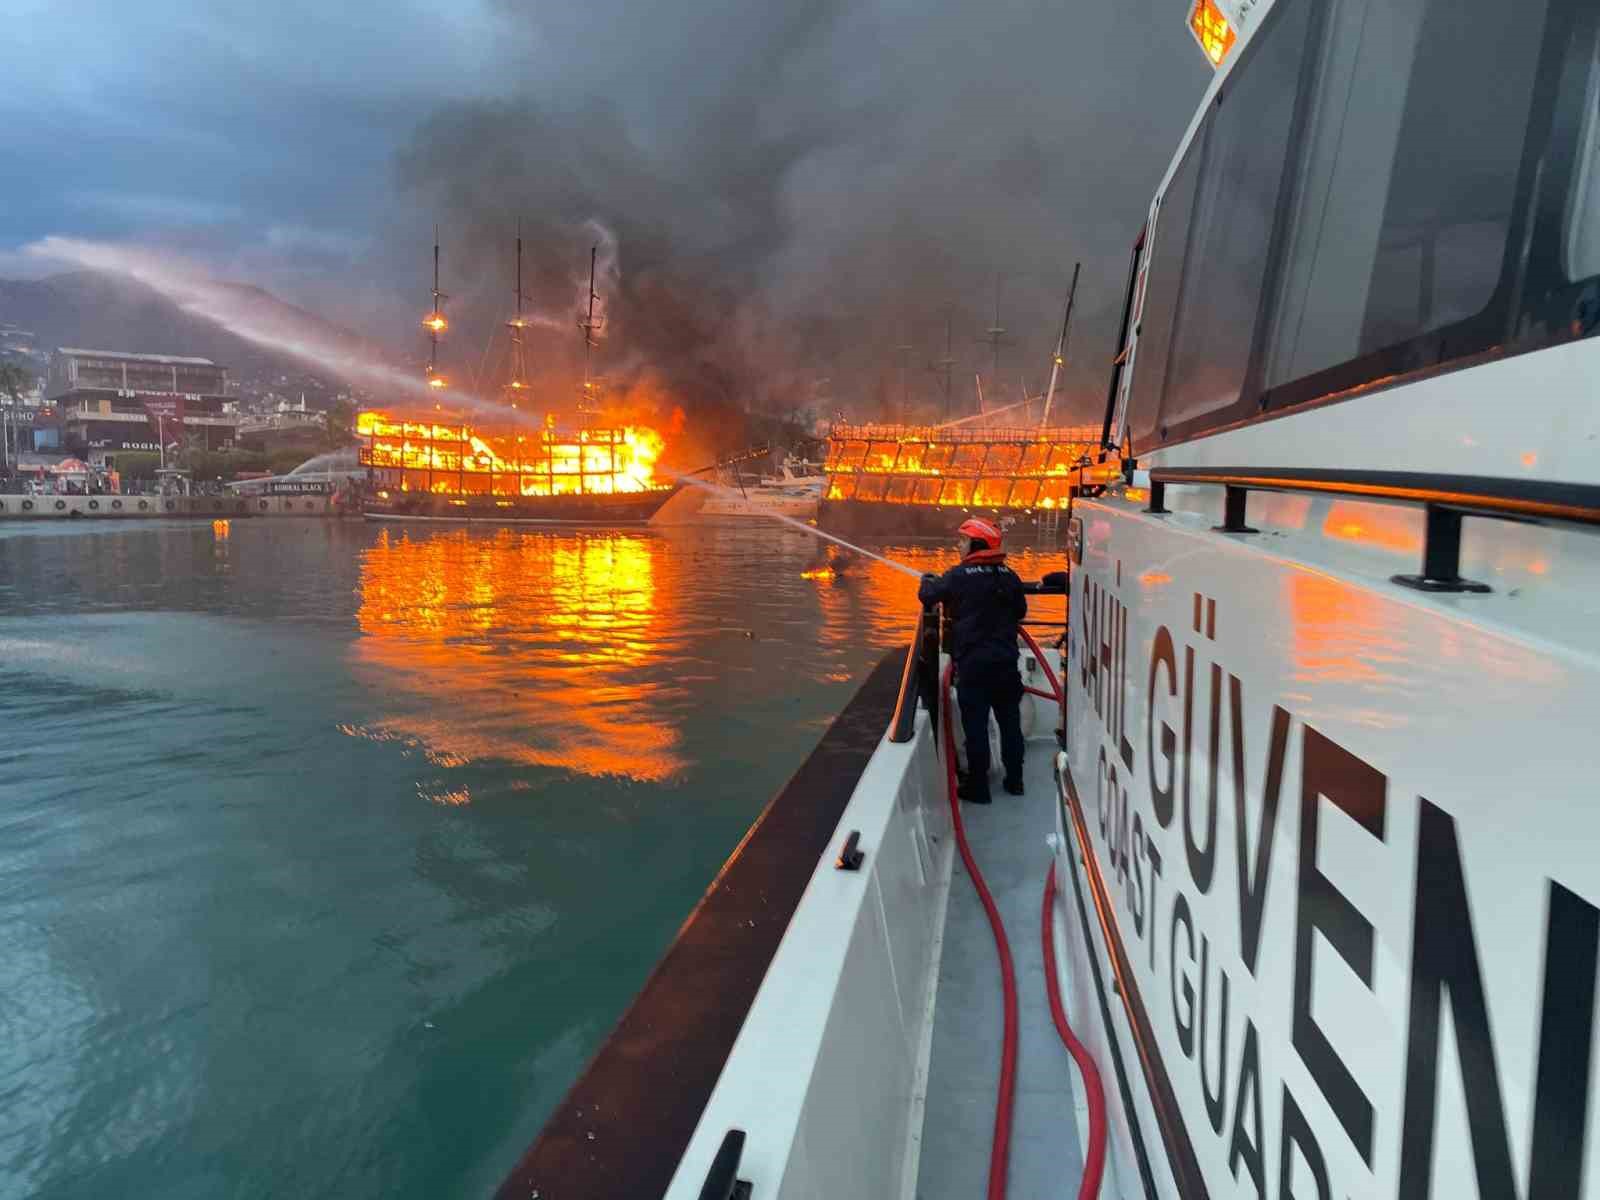 Alanya’da alev alev yanan tur tekneleriyle ilgili adli soruşturma başlatıldı
